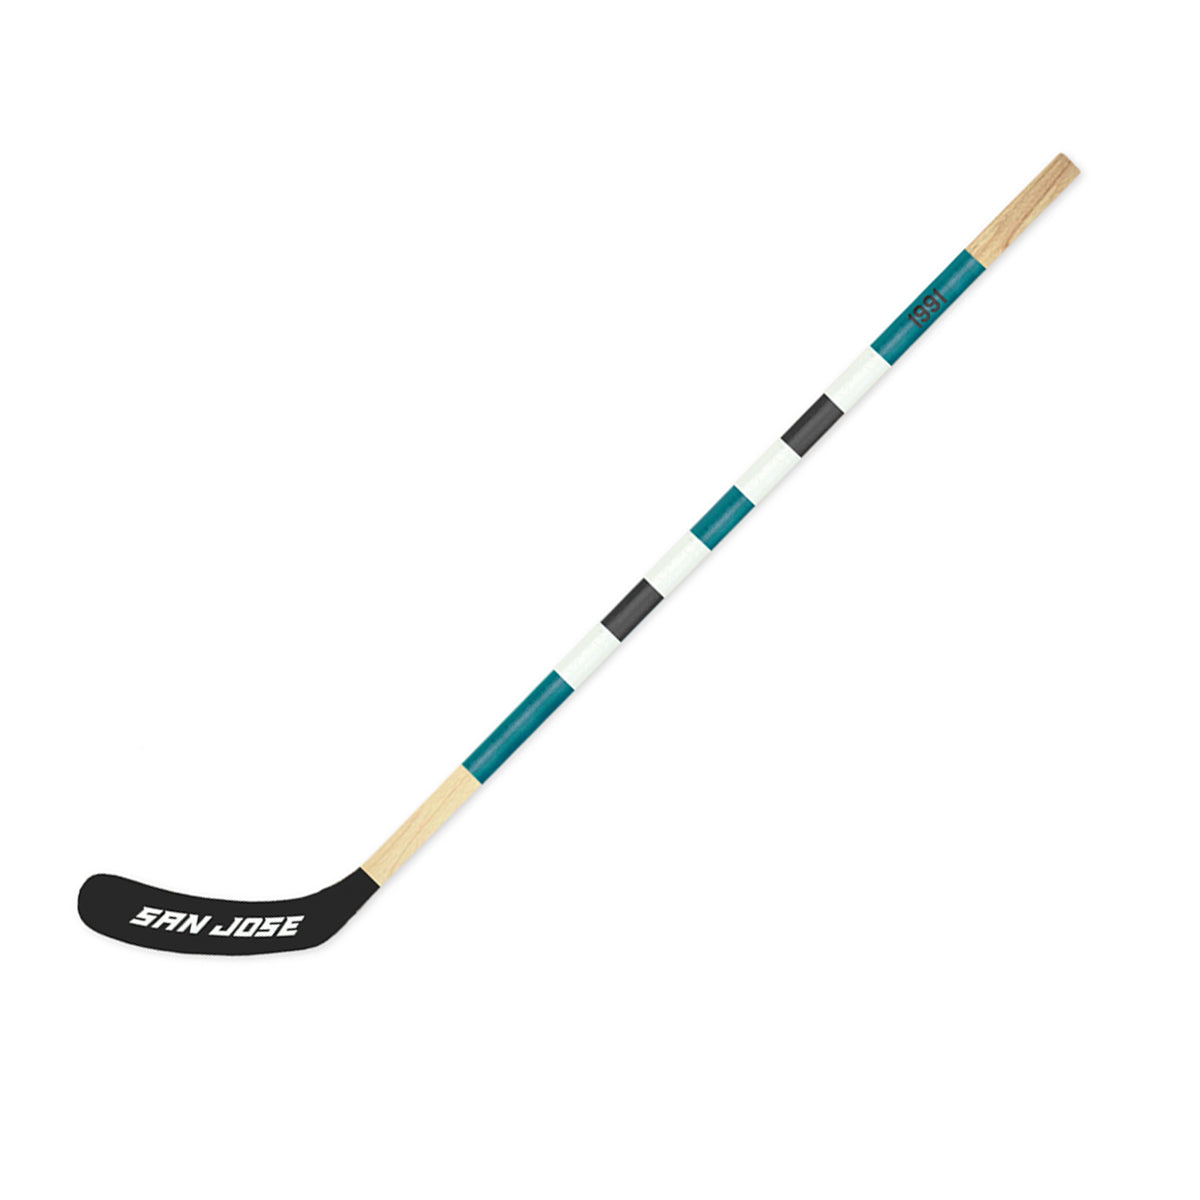 San Jose Mitchell Hockey Stick